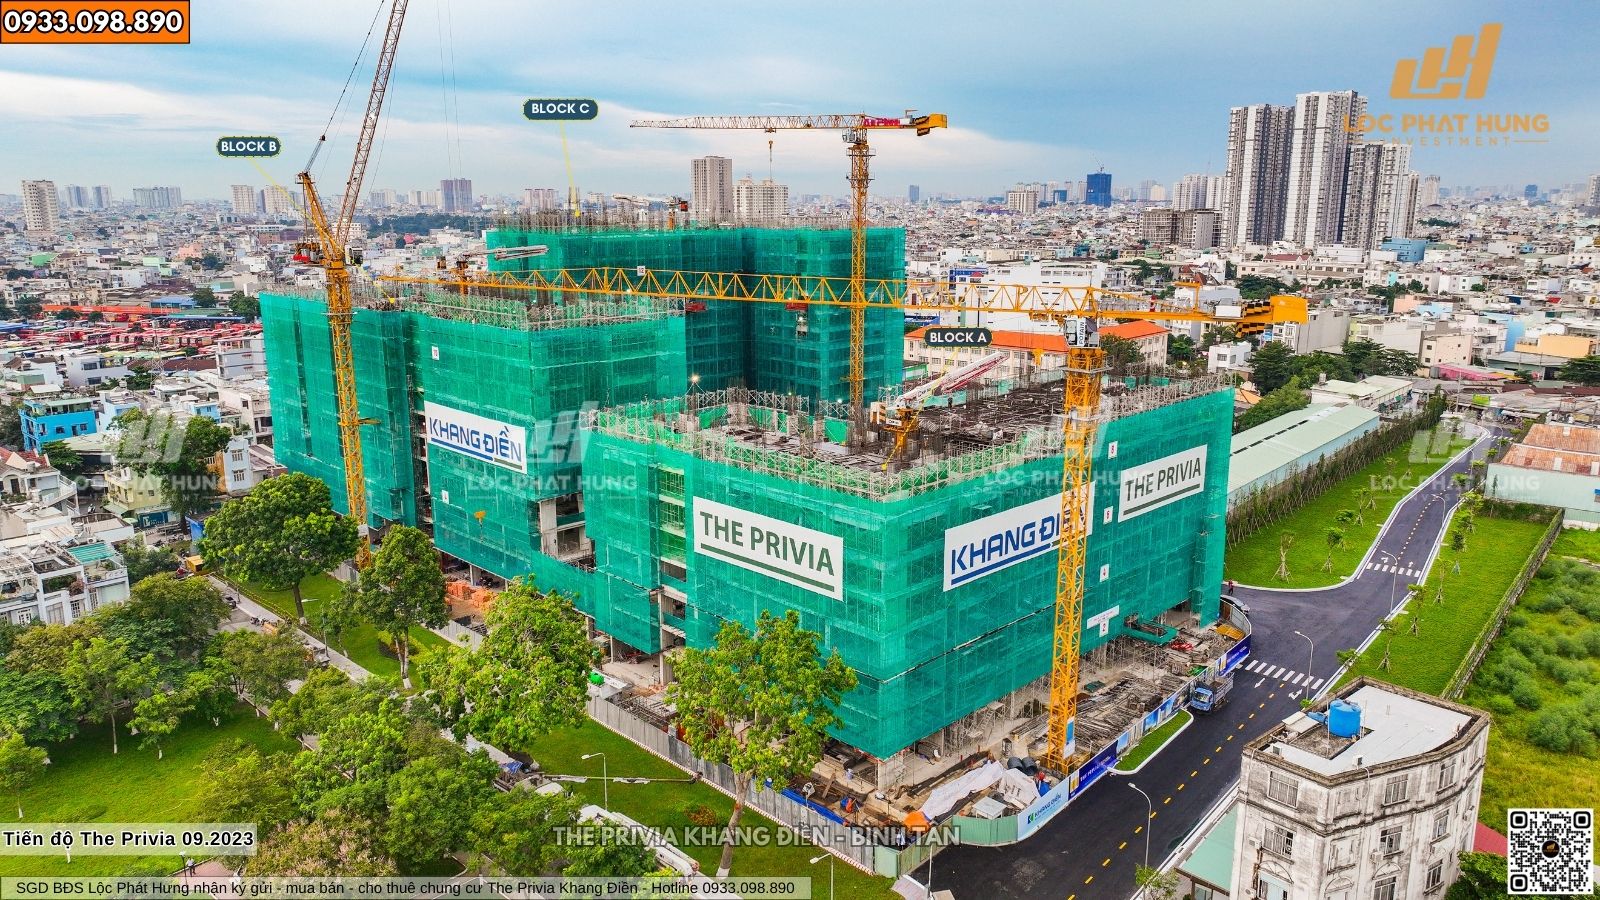 Tiến độ xây dựng chung cư The Privia Khang Điền 16.09.2023